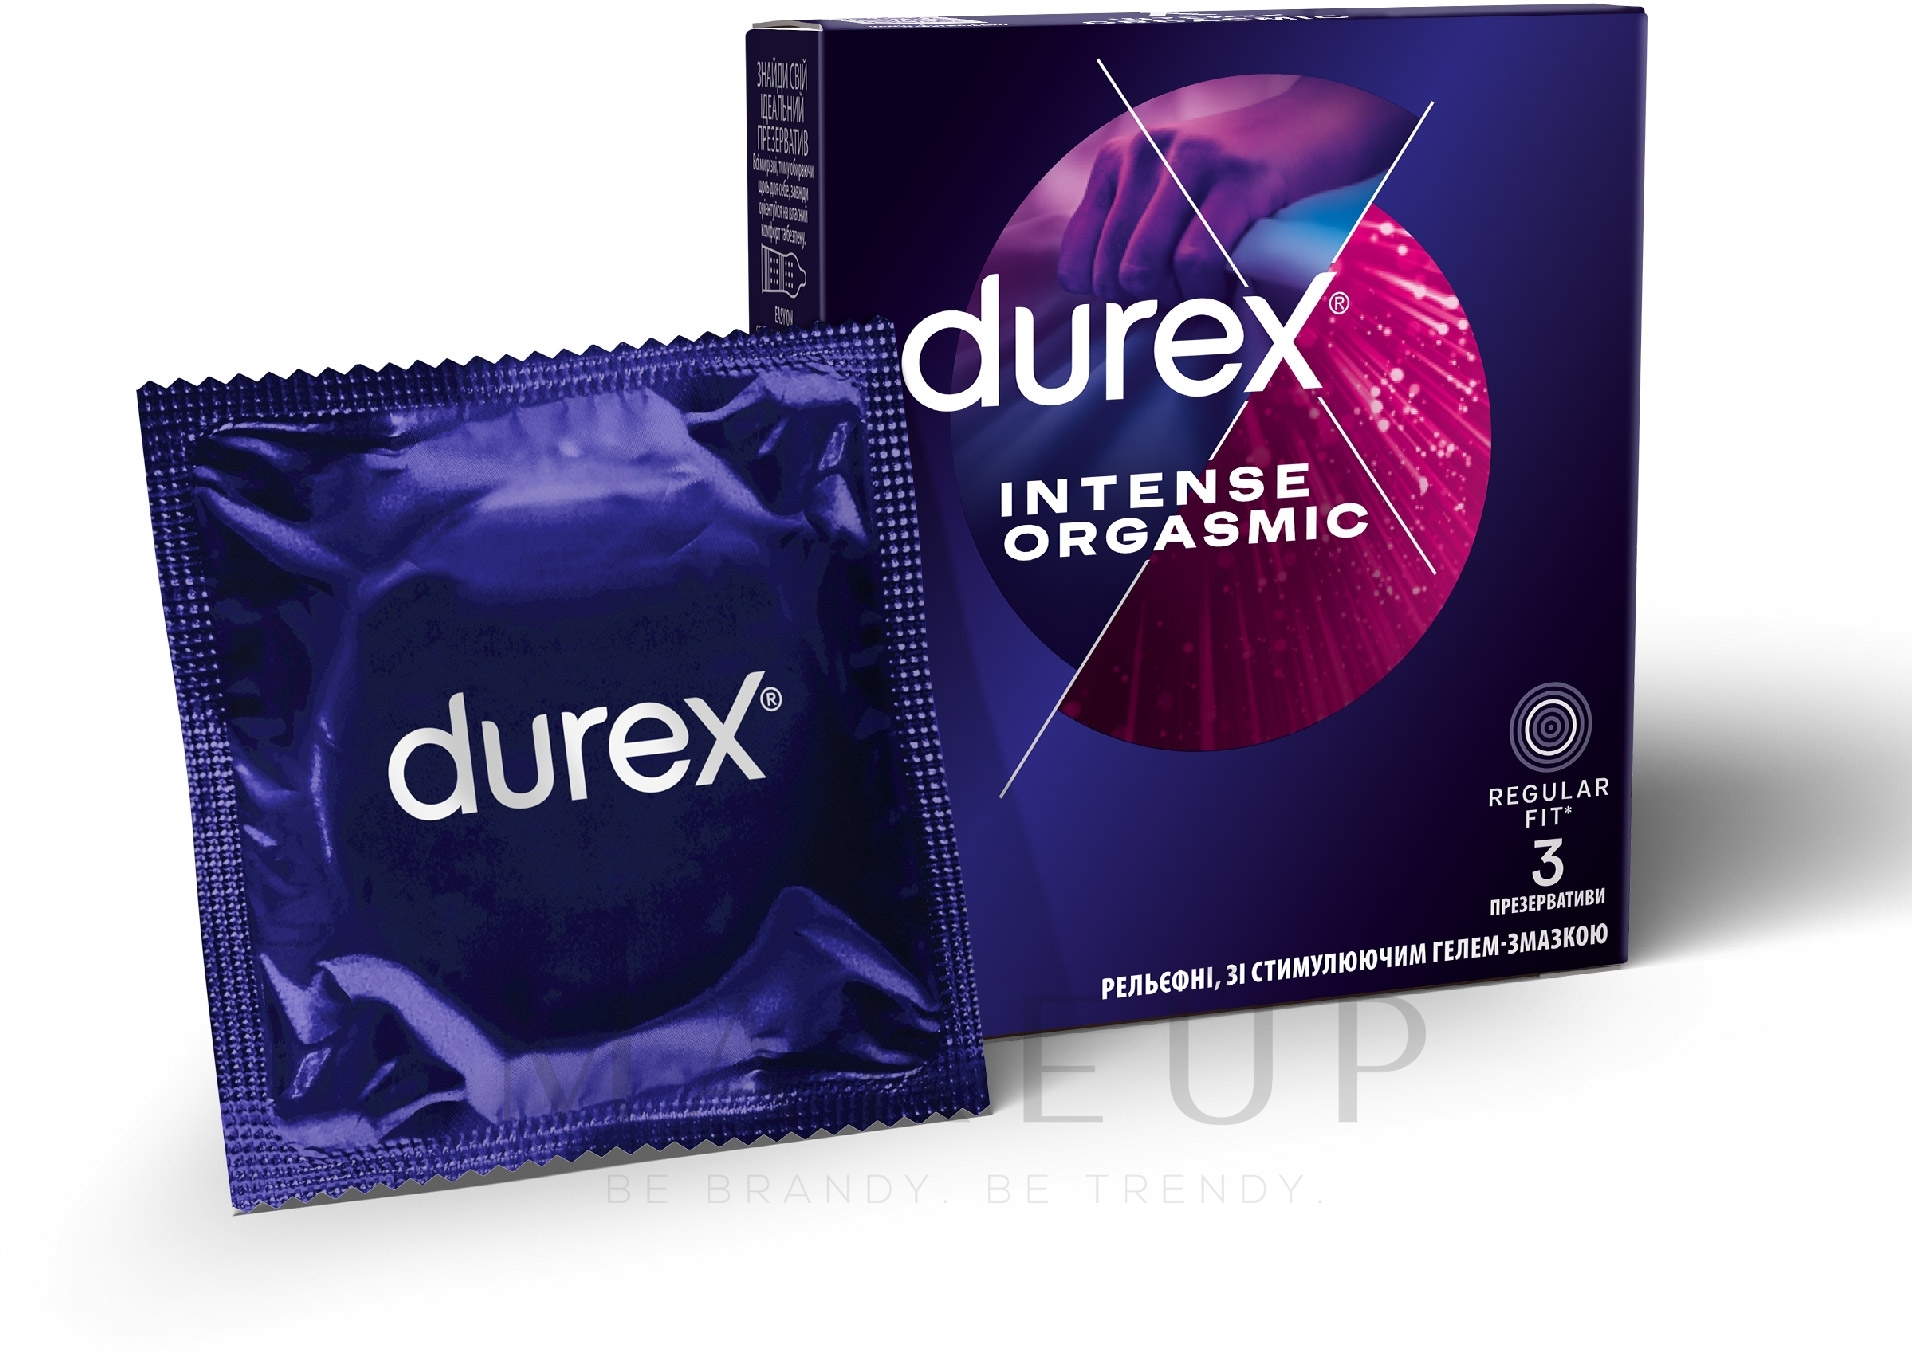 Gerippte und genoppte Kondome mit zusätzlichem Desirex-Gel befeuchtet 3 St. - Durex Intense Orgasmic — Bild 3 St.